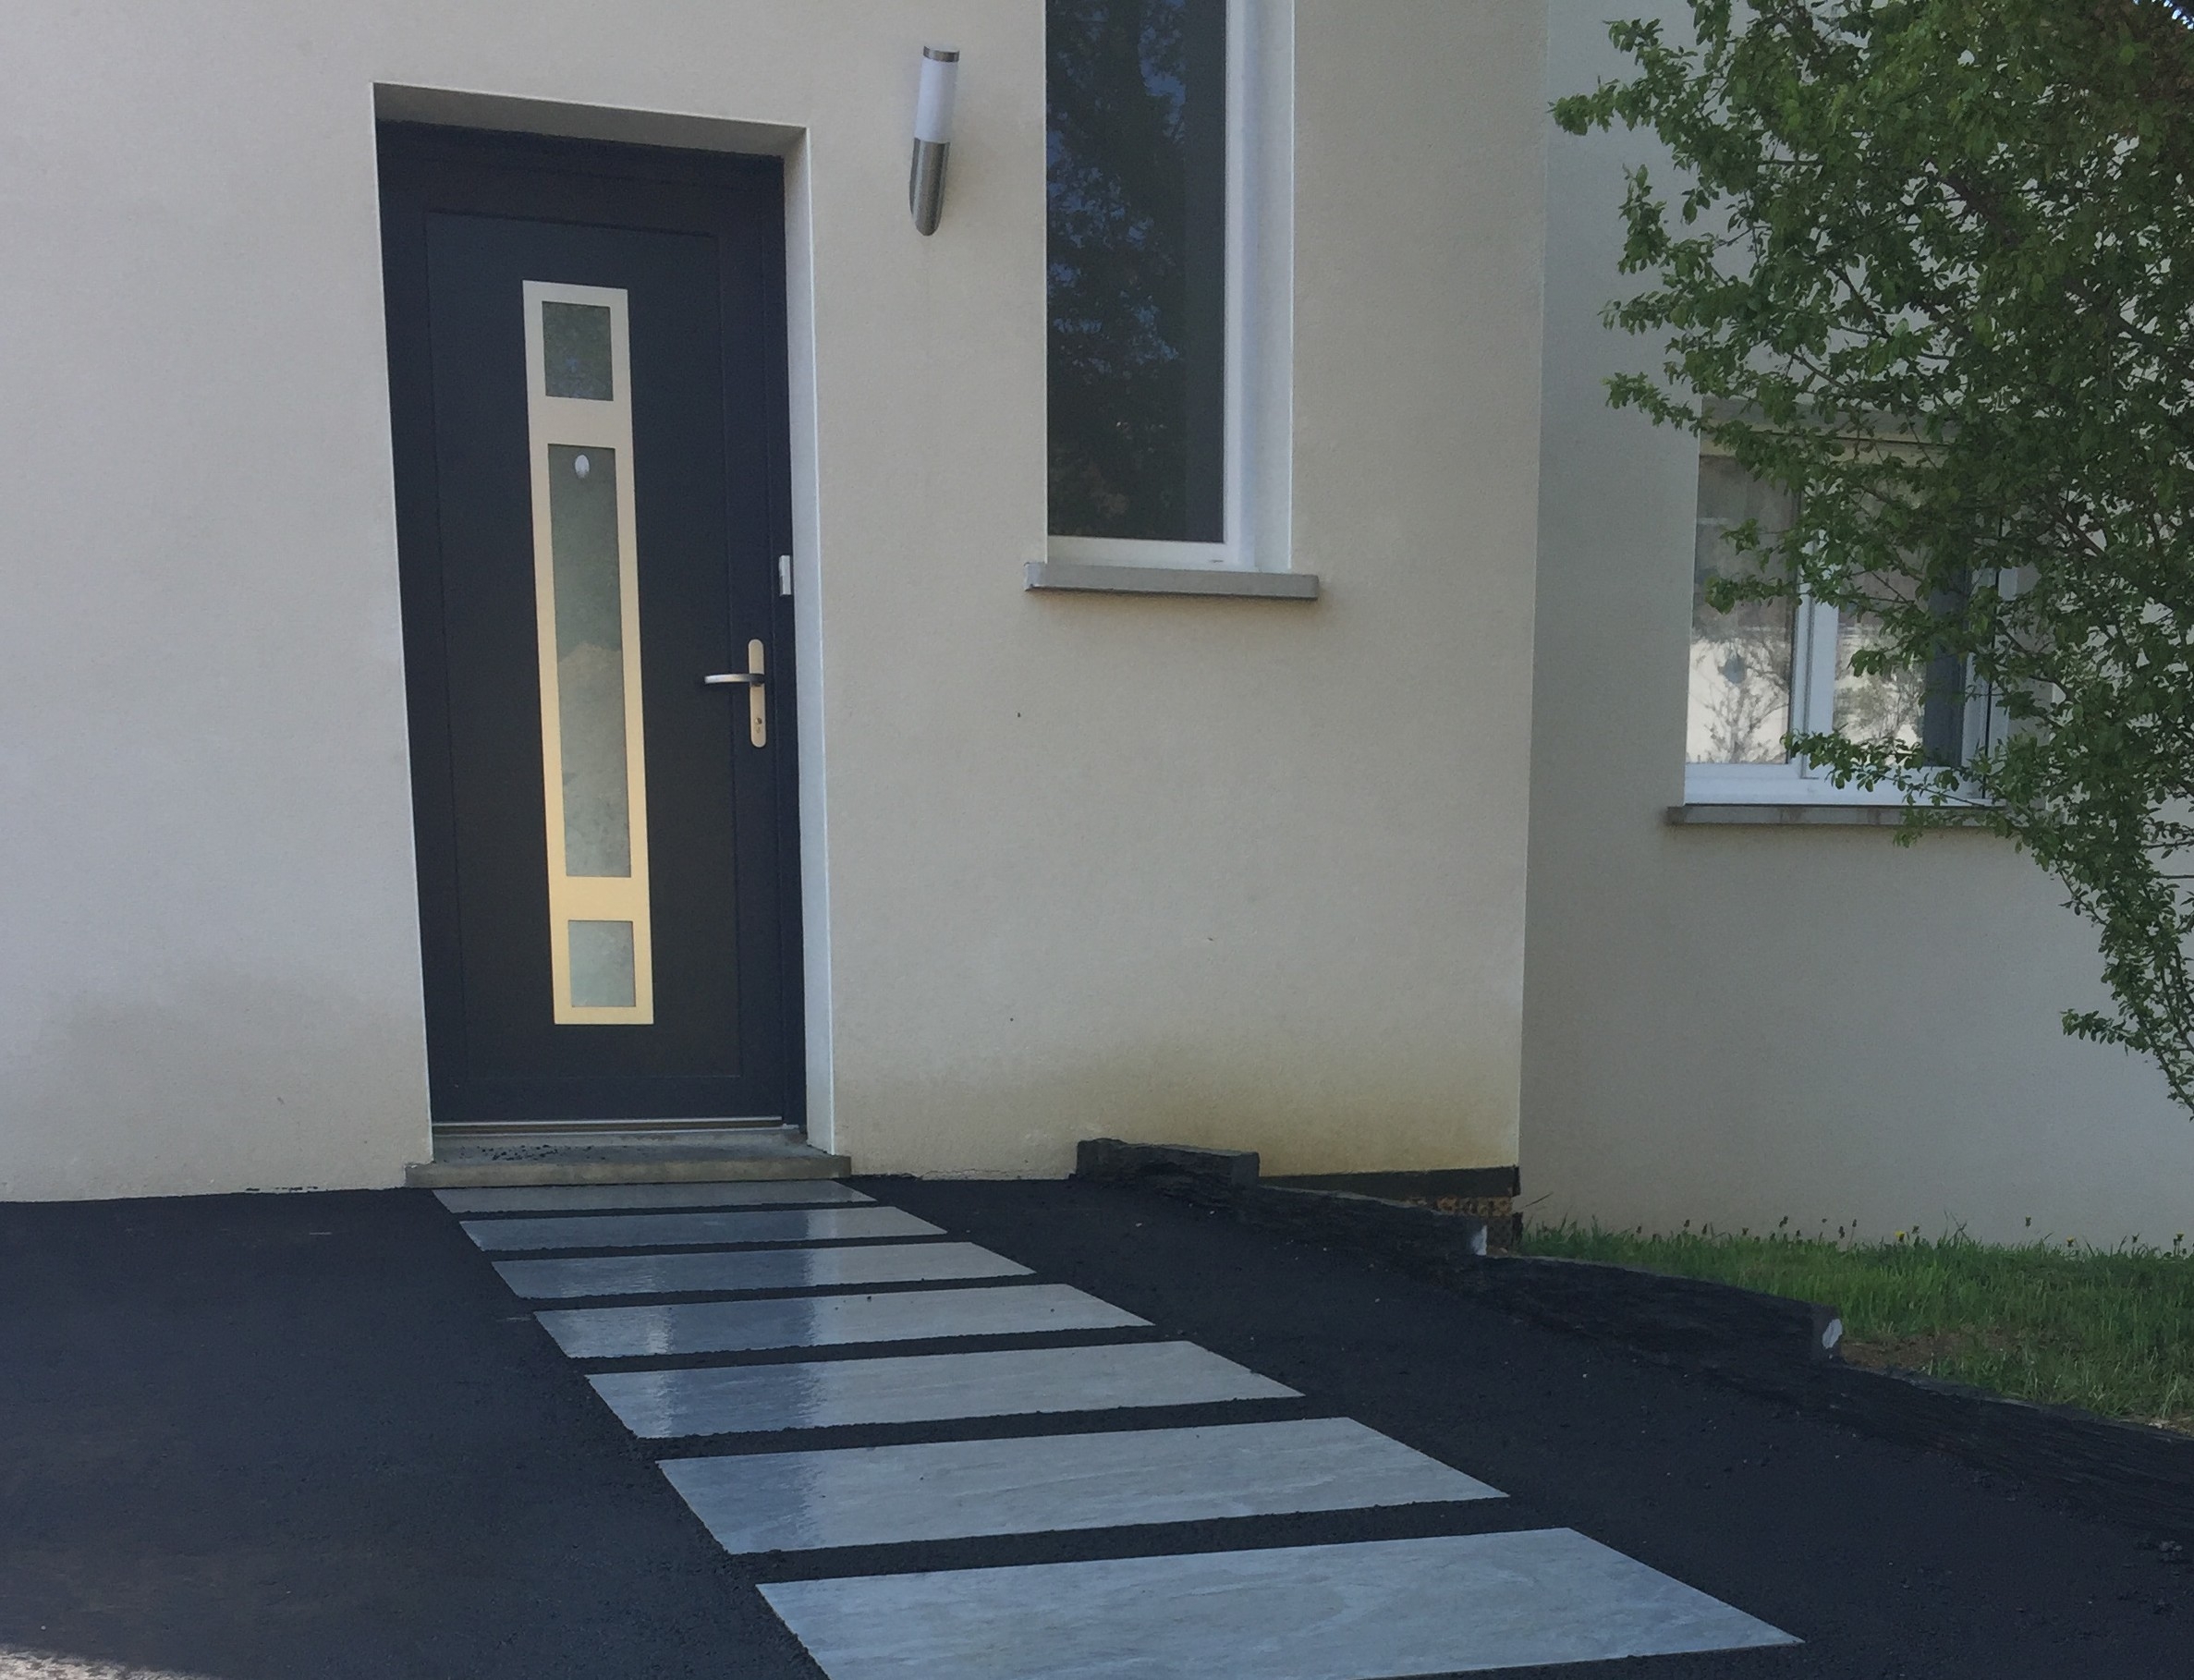 Cration Entre de maison en Dallage et enrob noir  chaud - Meurthe-et-Moselle ralise le 16/05/2019